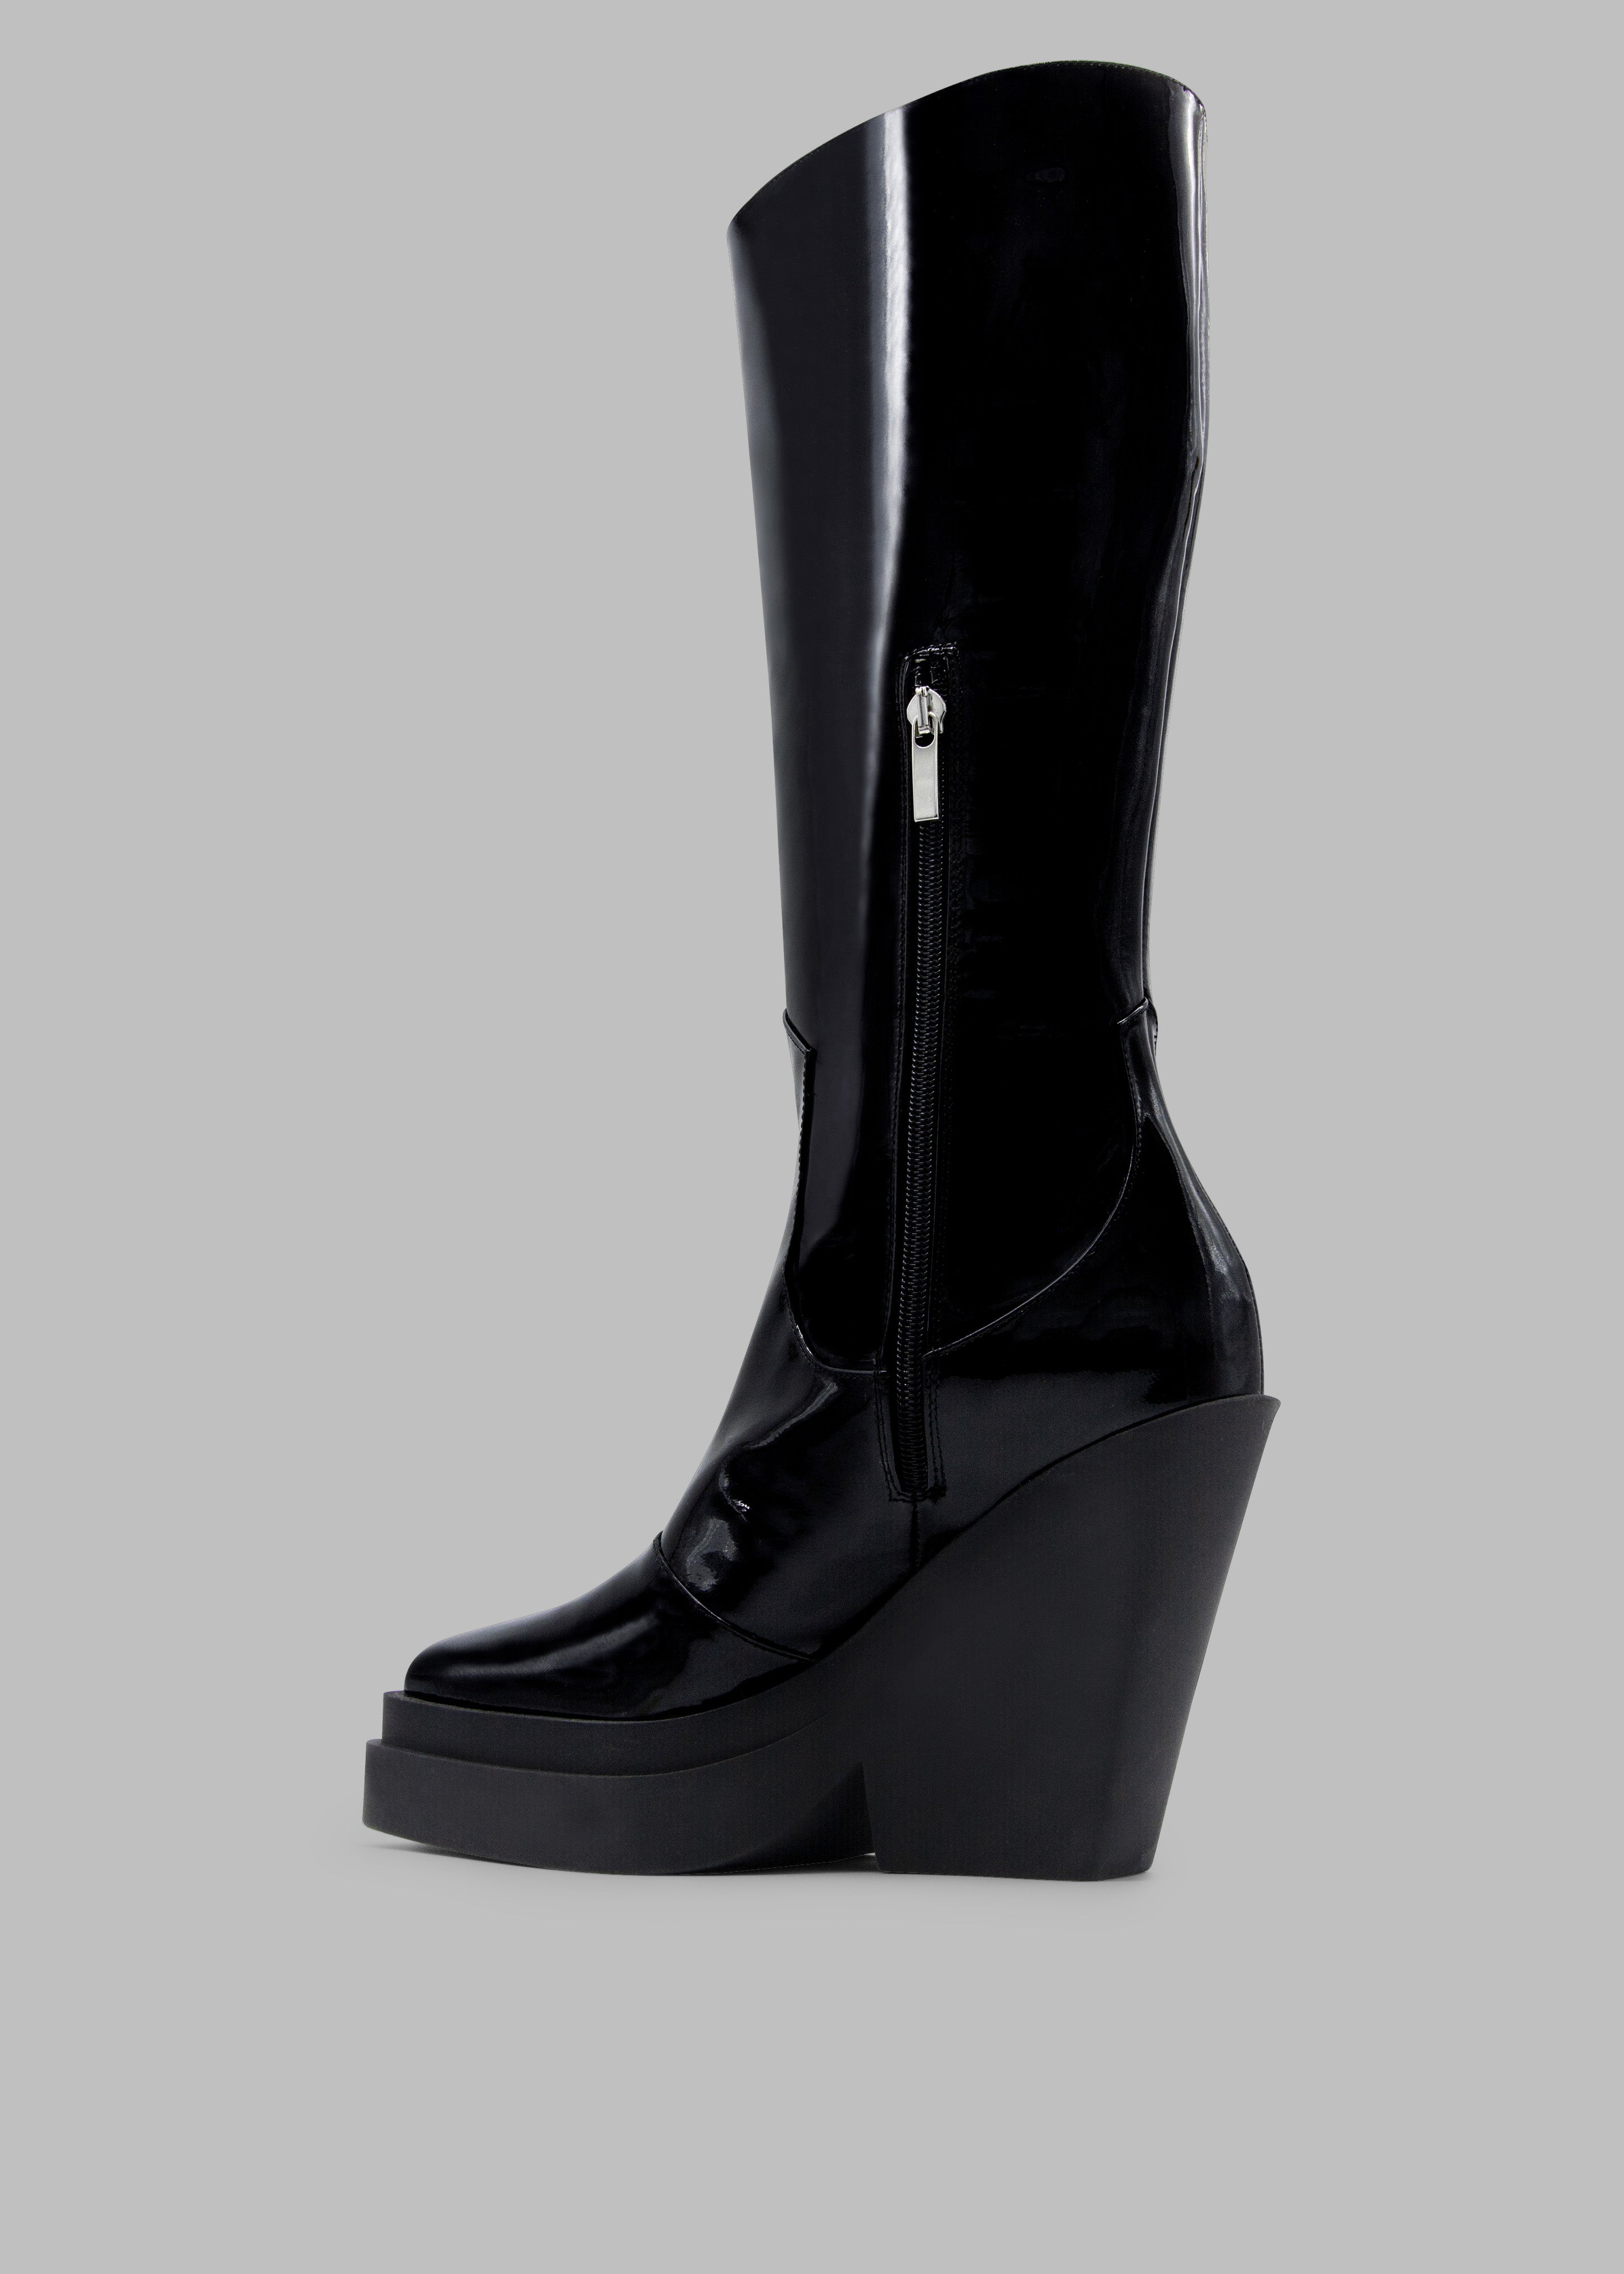 Gia Borghini Gia 14 Knee-High Texan Boots - Patent Black - 5